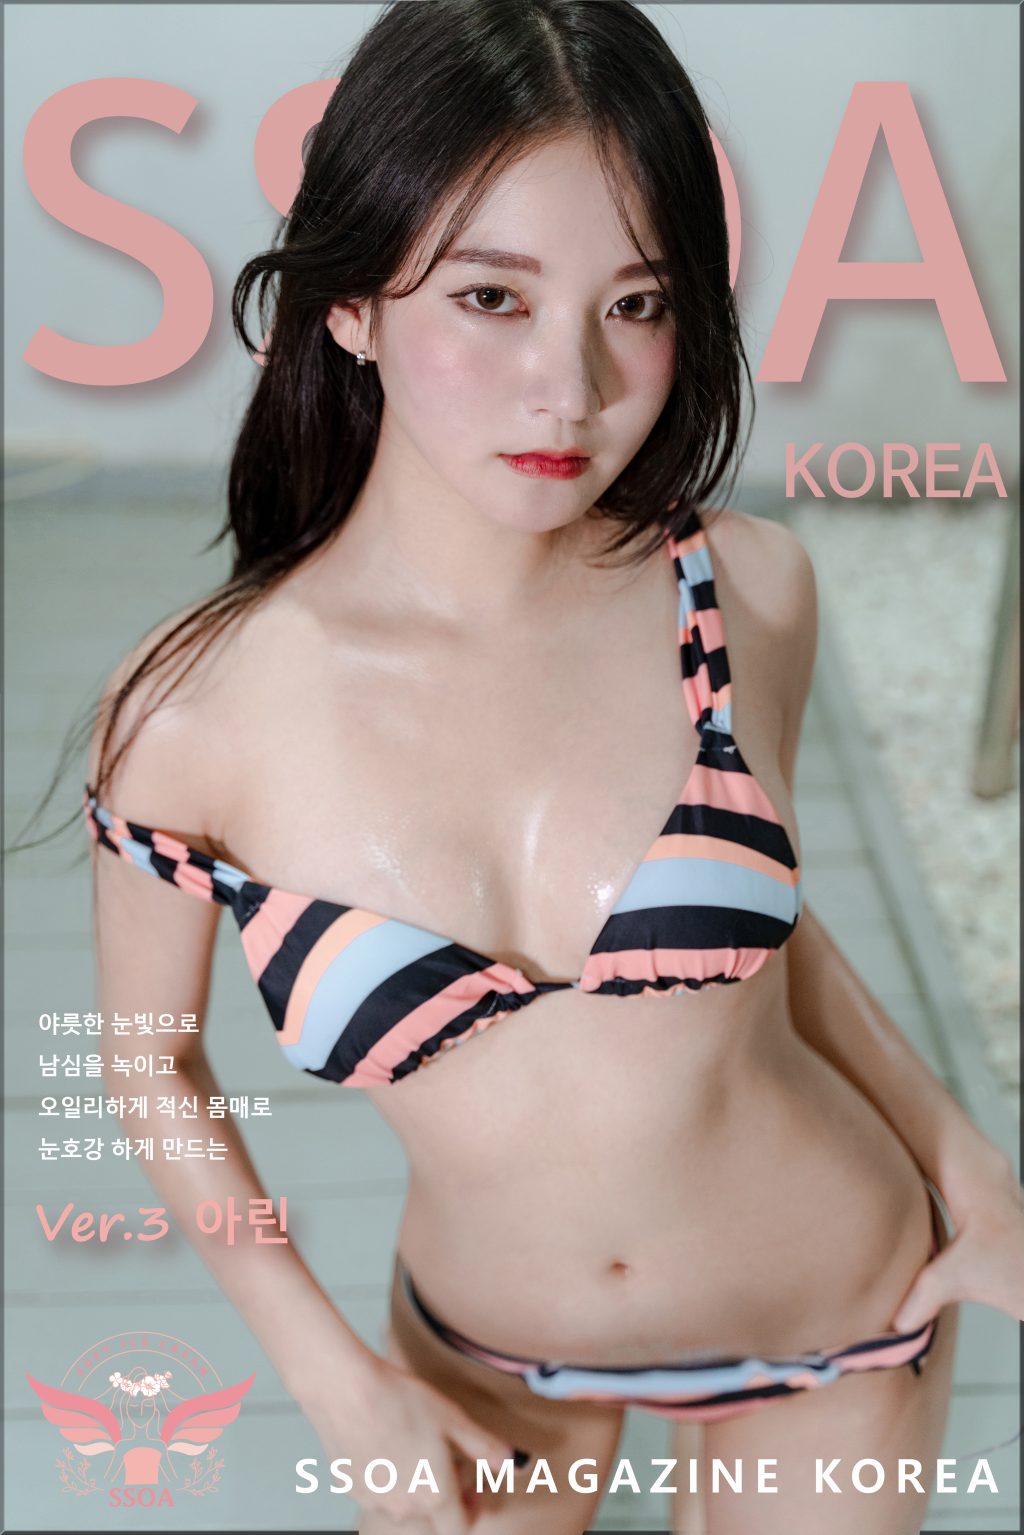 Watch sexy SSOA Korea – Arin (아린): Pool Villa photos